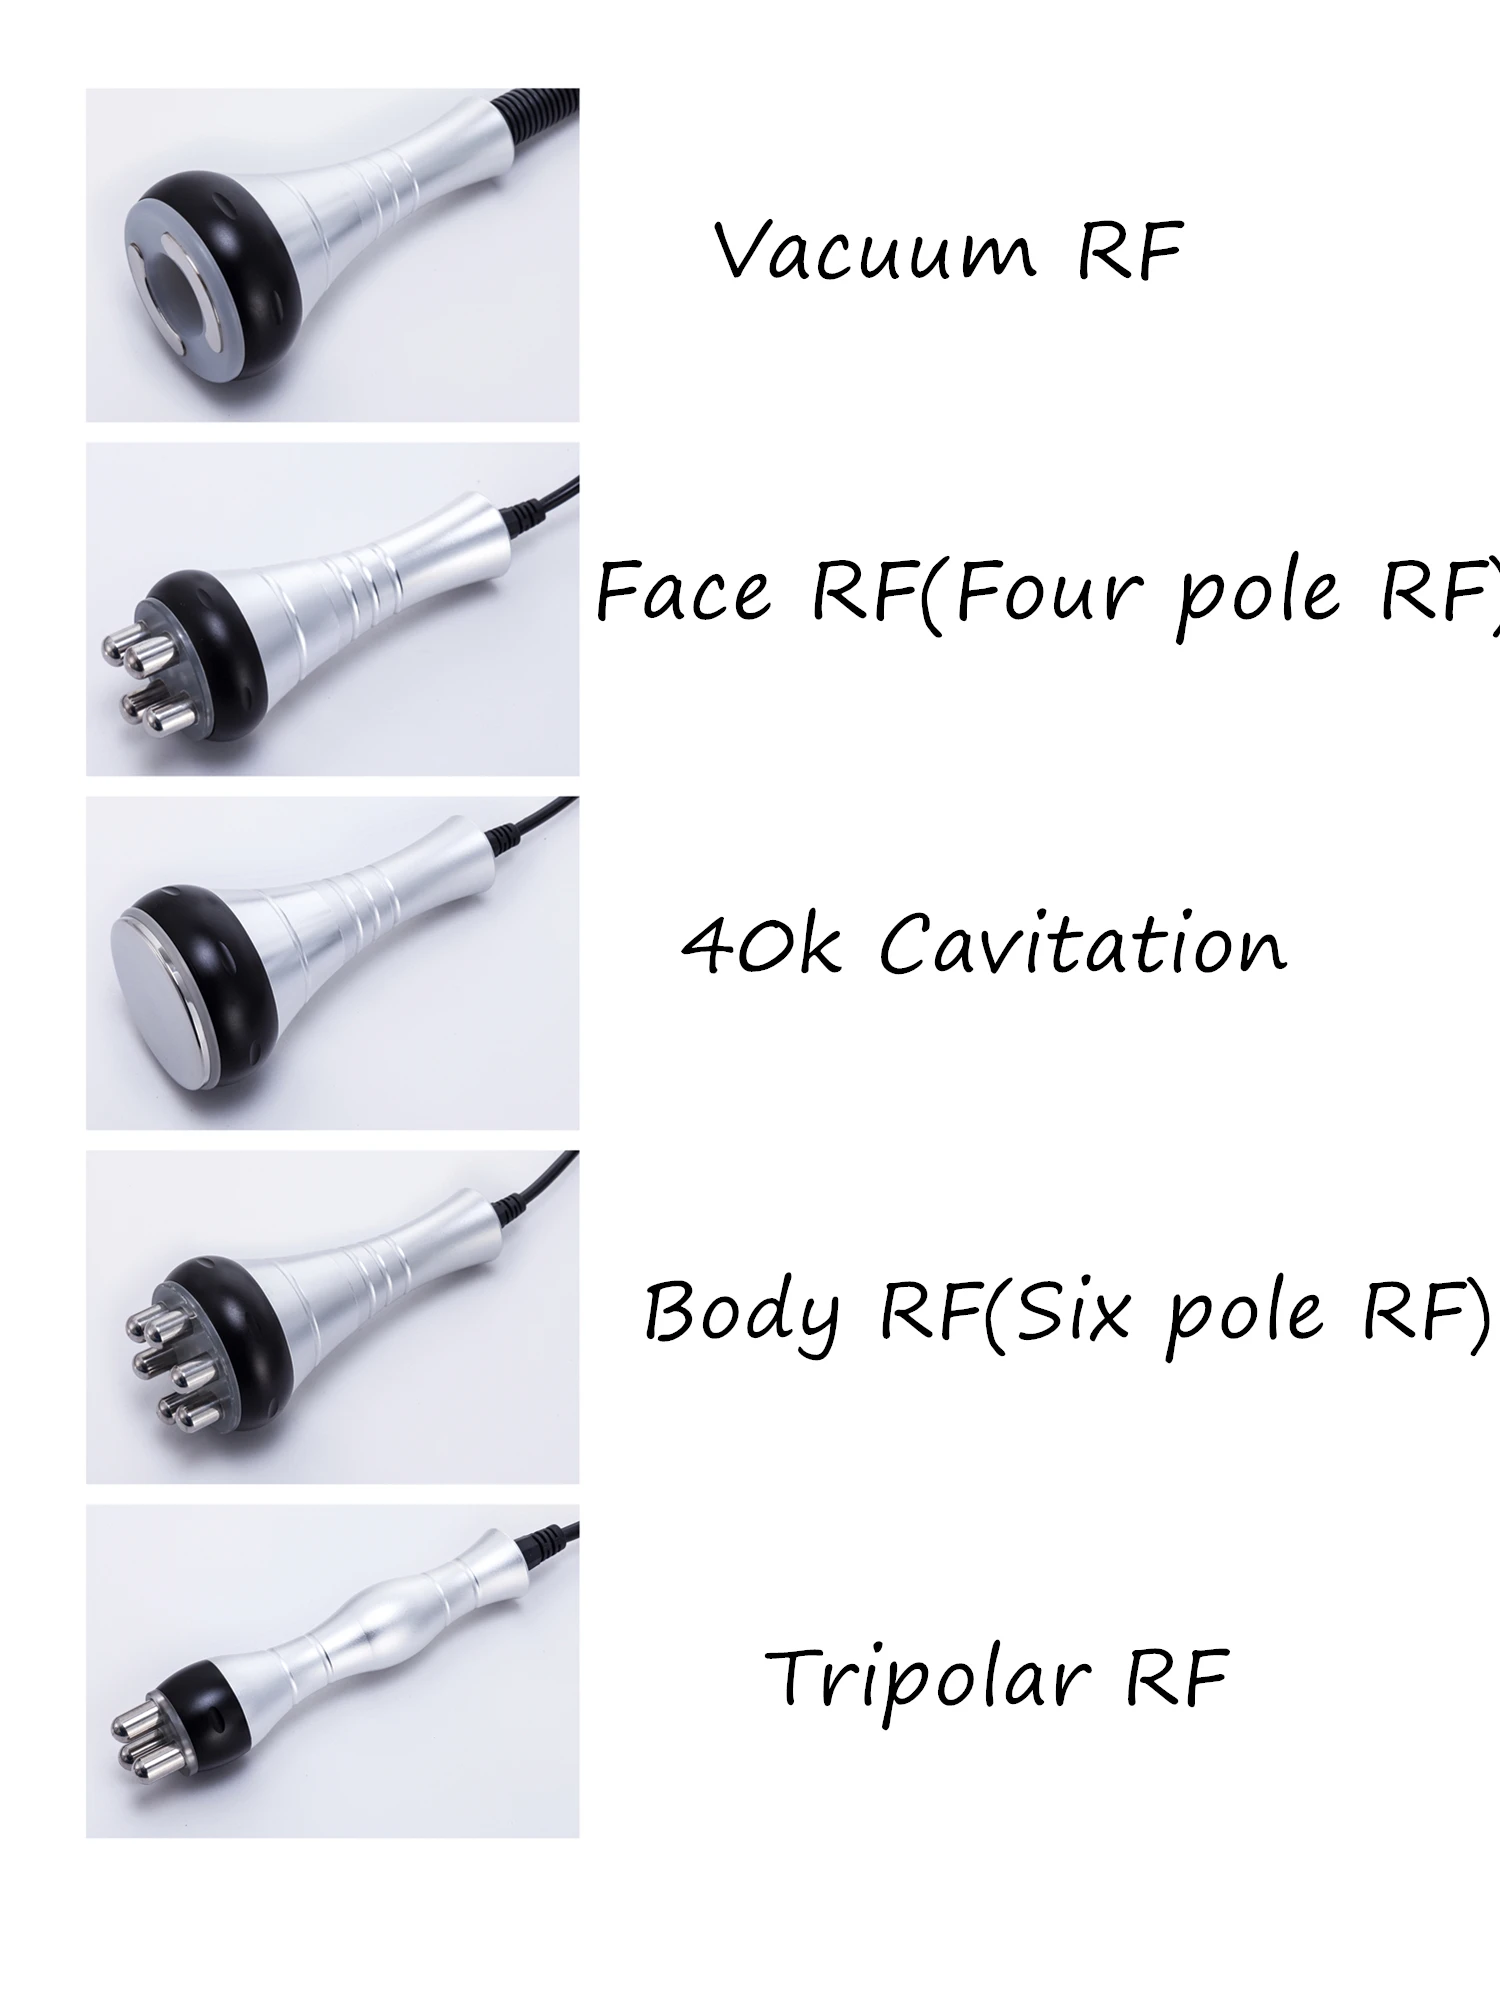 Новейший 5 в 1 Липо лазер+ Кавитация+ РФ+ вакуум/РФ 40 к кавитационный вакуумный липоляризатор для похудения тела машина для похудения